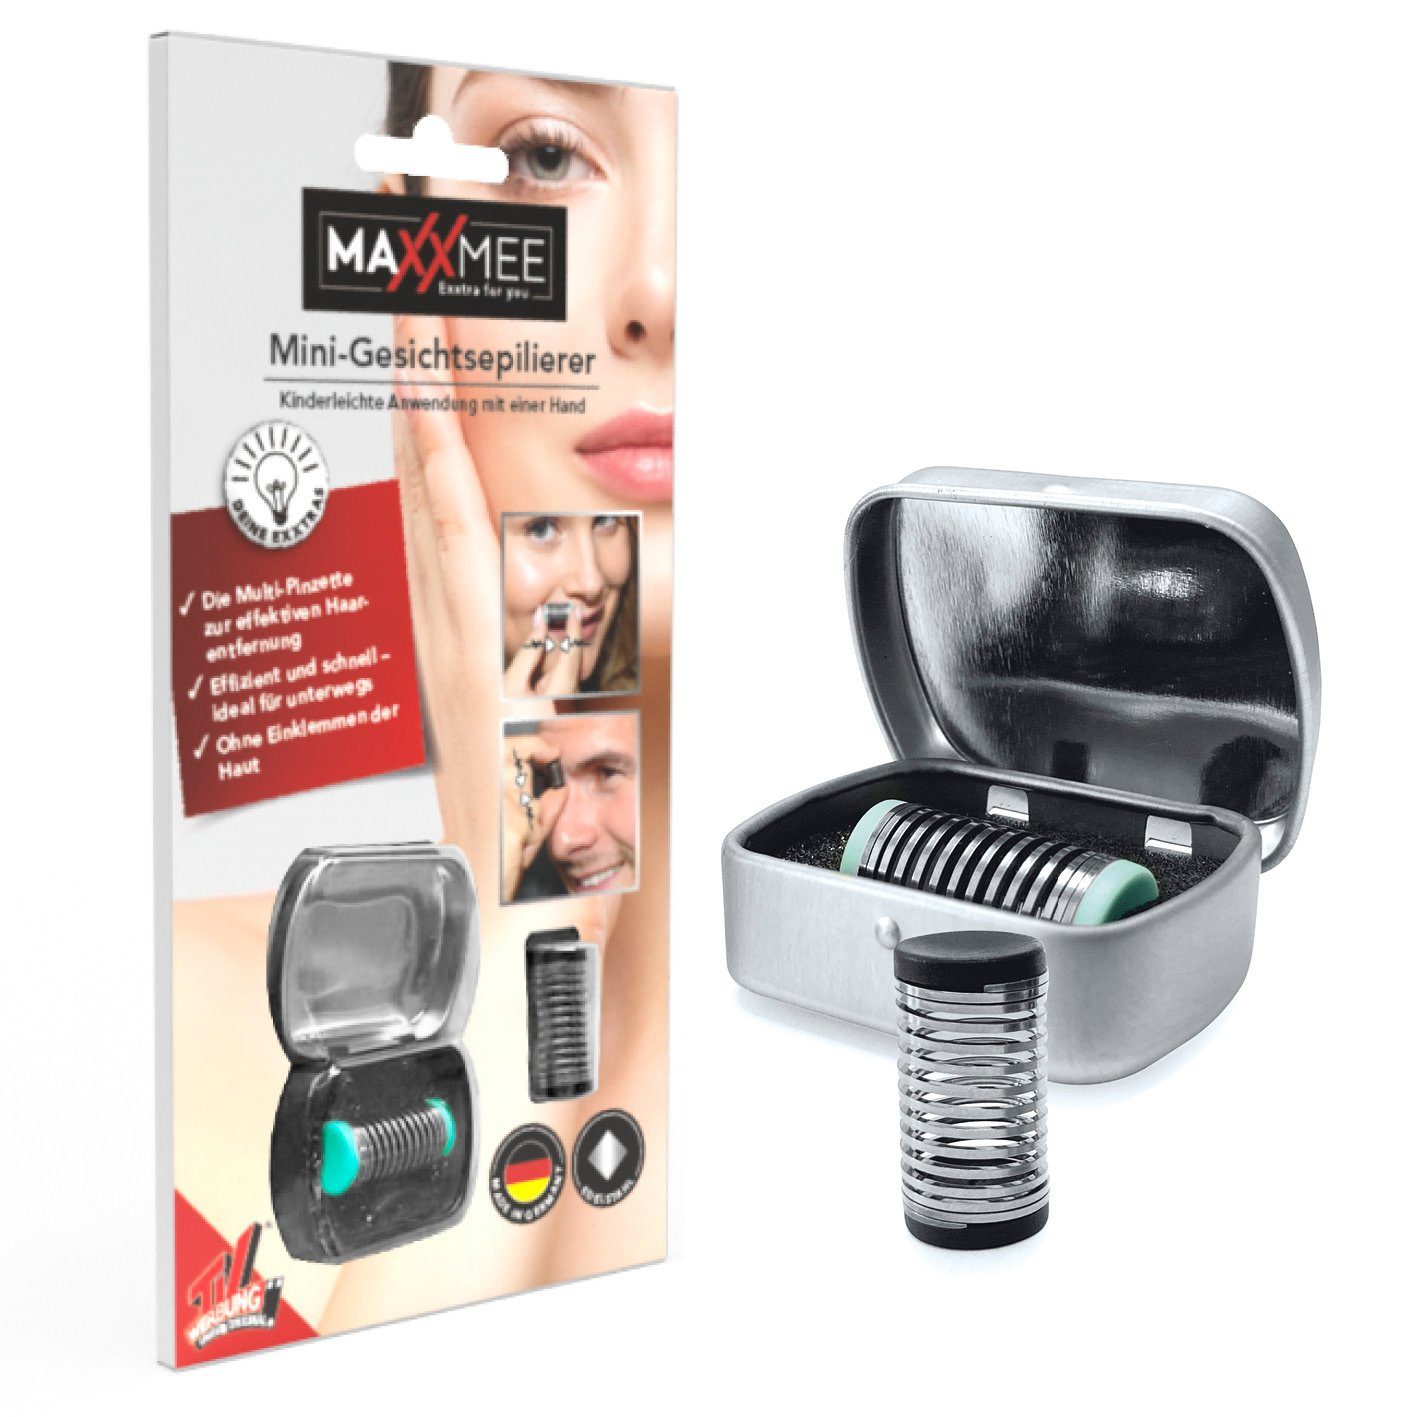 MAXXMEE - schwarz/türkis Gesichtsepilierer Aufbewahrungsbox Mini Gesichtsepilierer inkl.